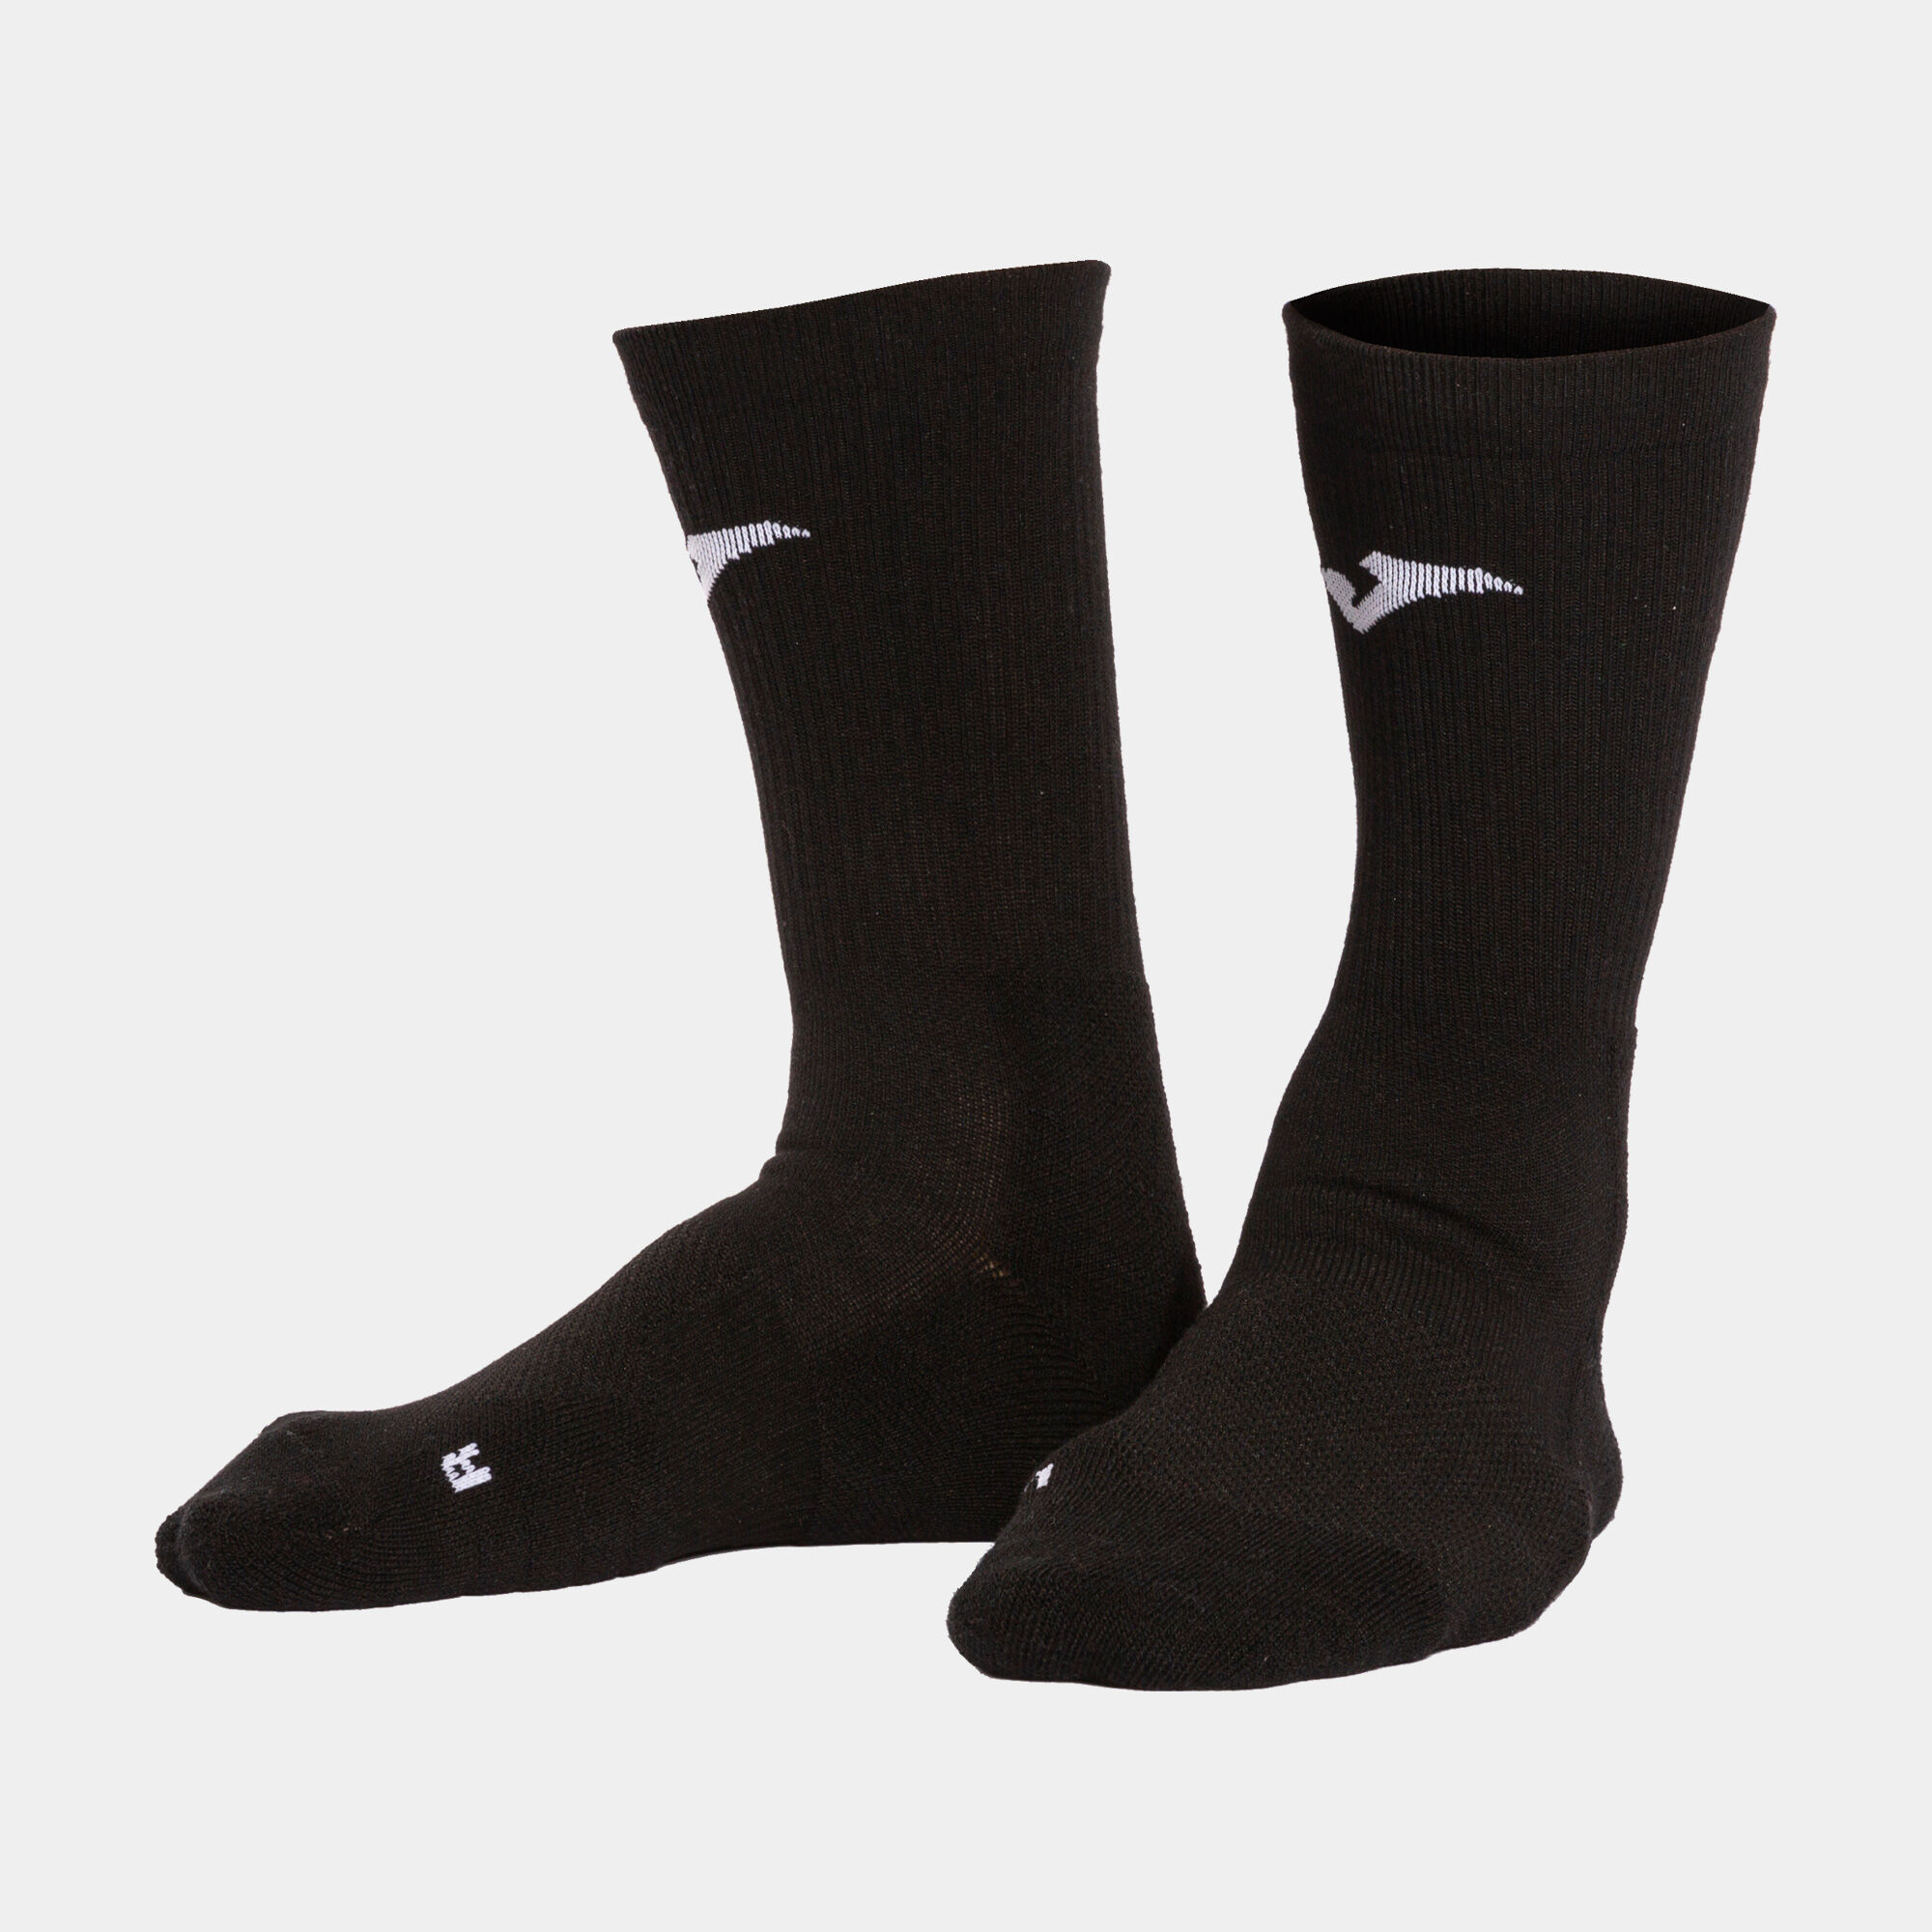 Socks unisex Montreal black